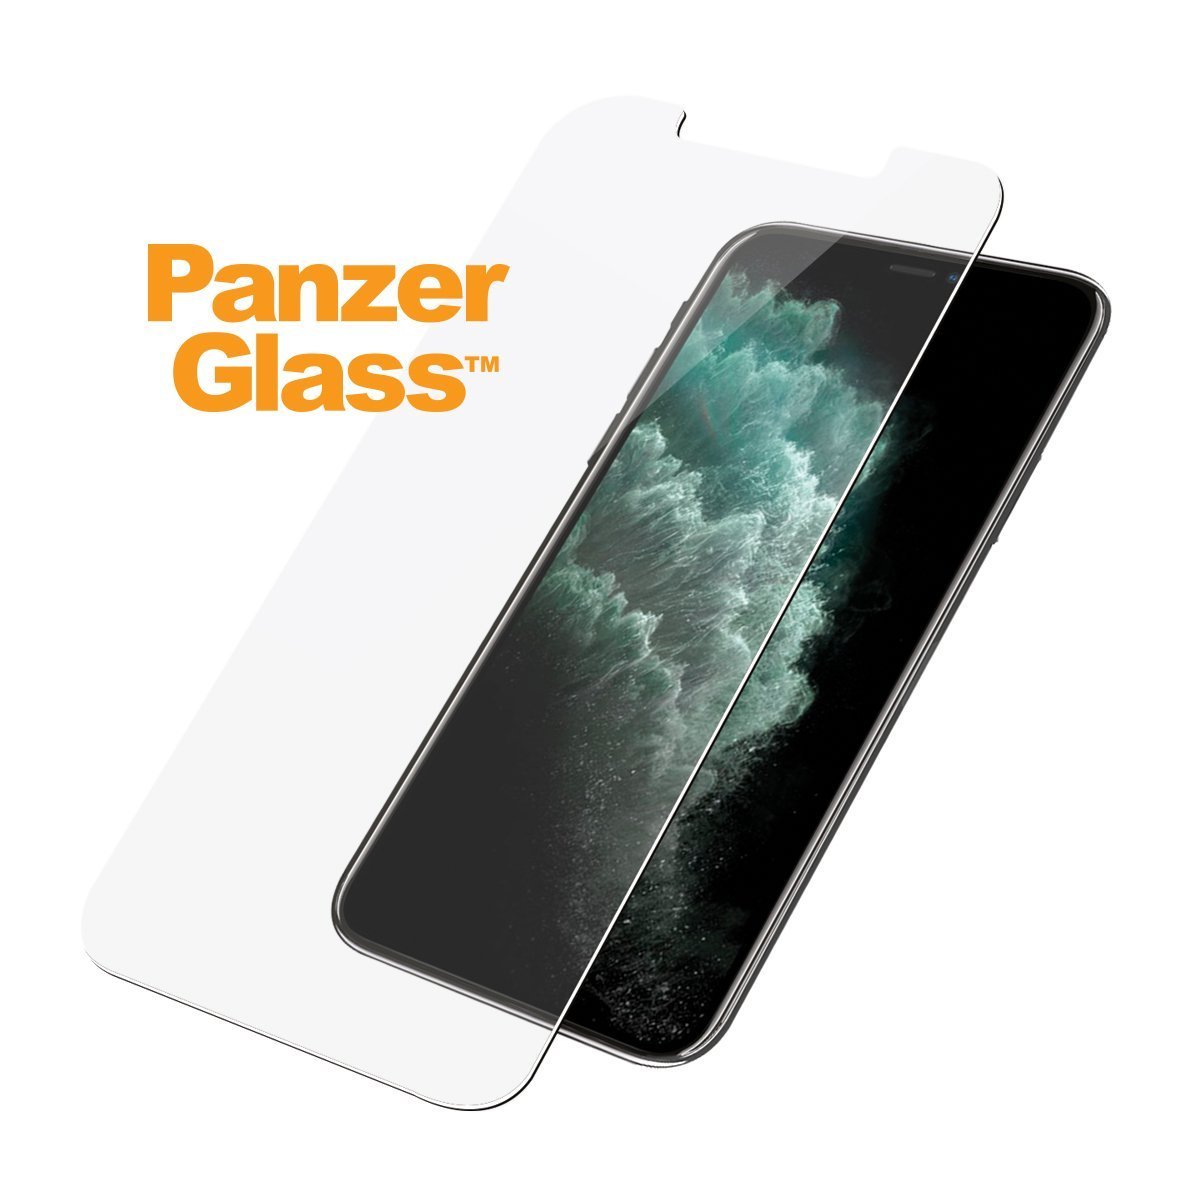 Kính Cường Lực Full Màn Hình PanzerGlass cho iPhone 12/12 Pro Max bảo vệ màn hình khỏi trầy xước và va đập hàng ngày. HÀNG CHÍNH HÃNG